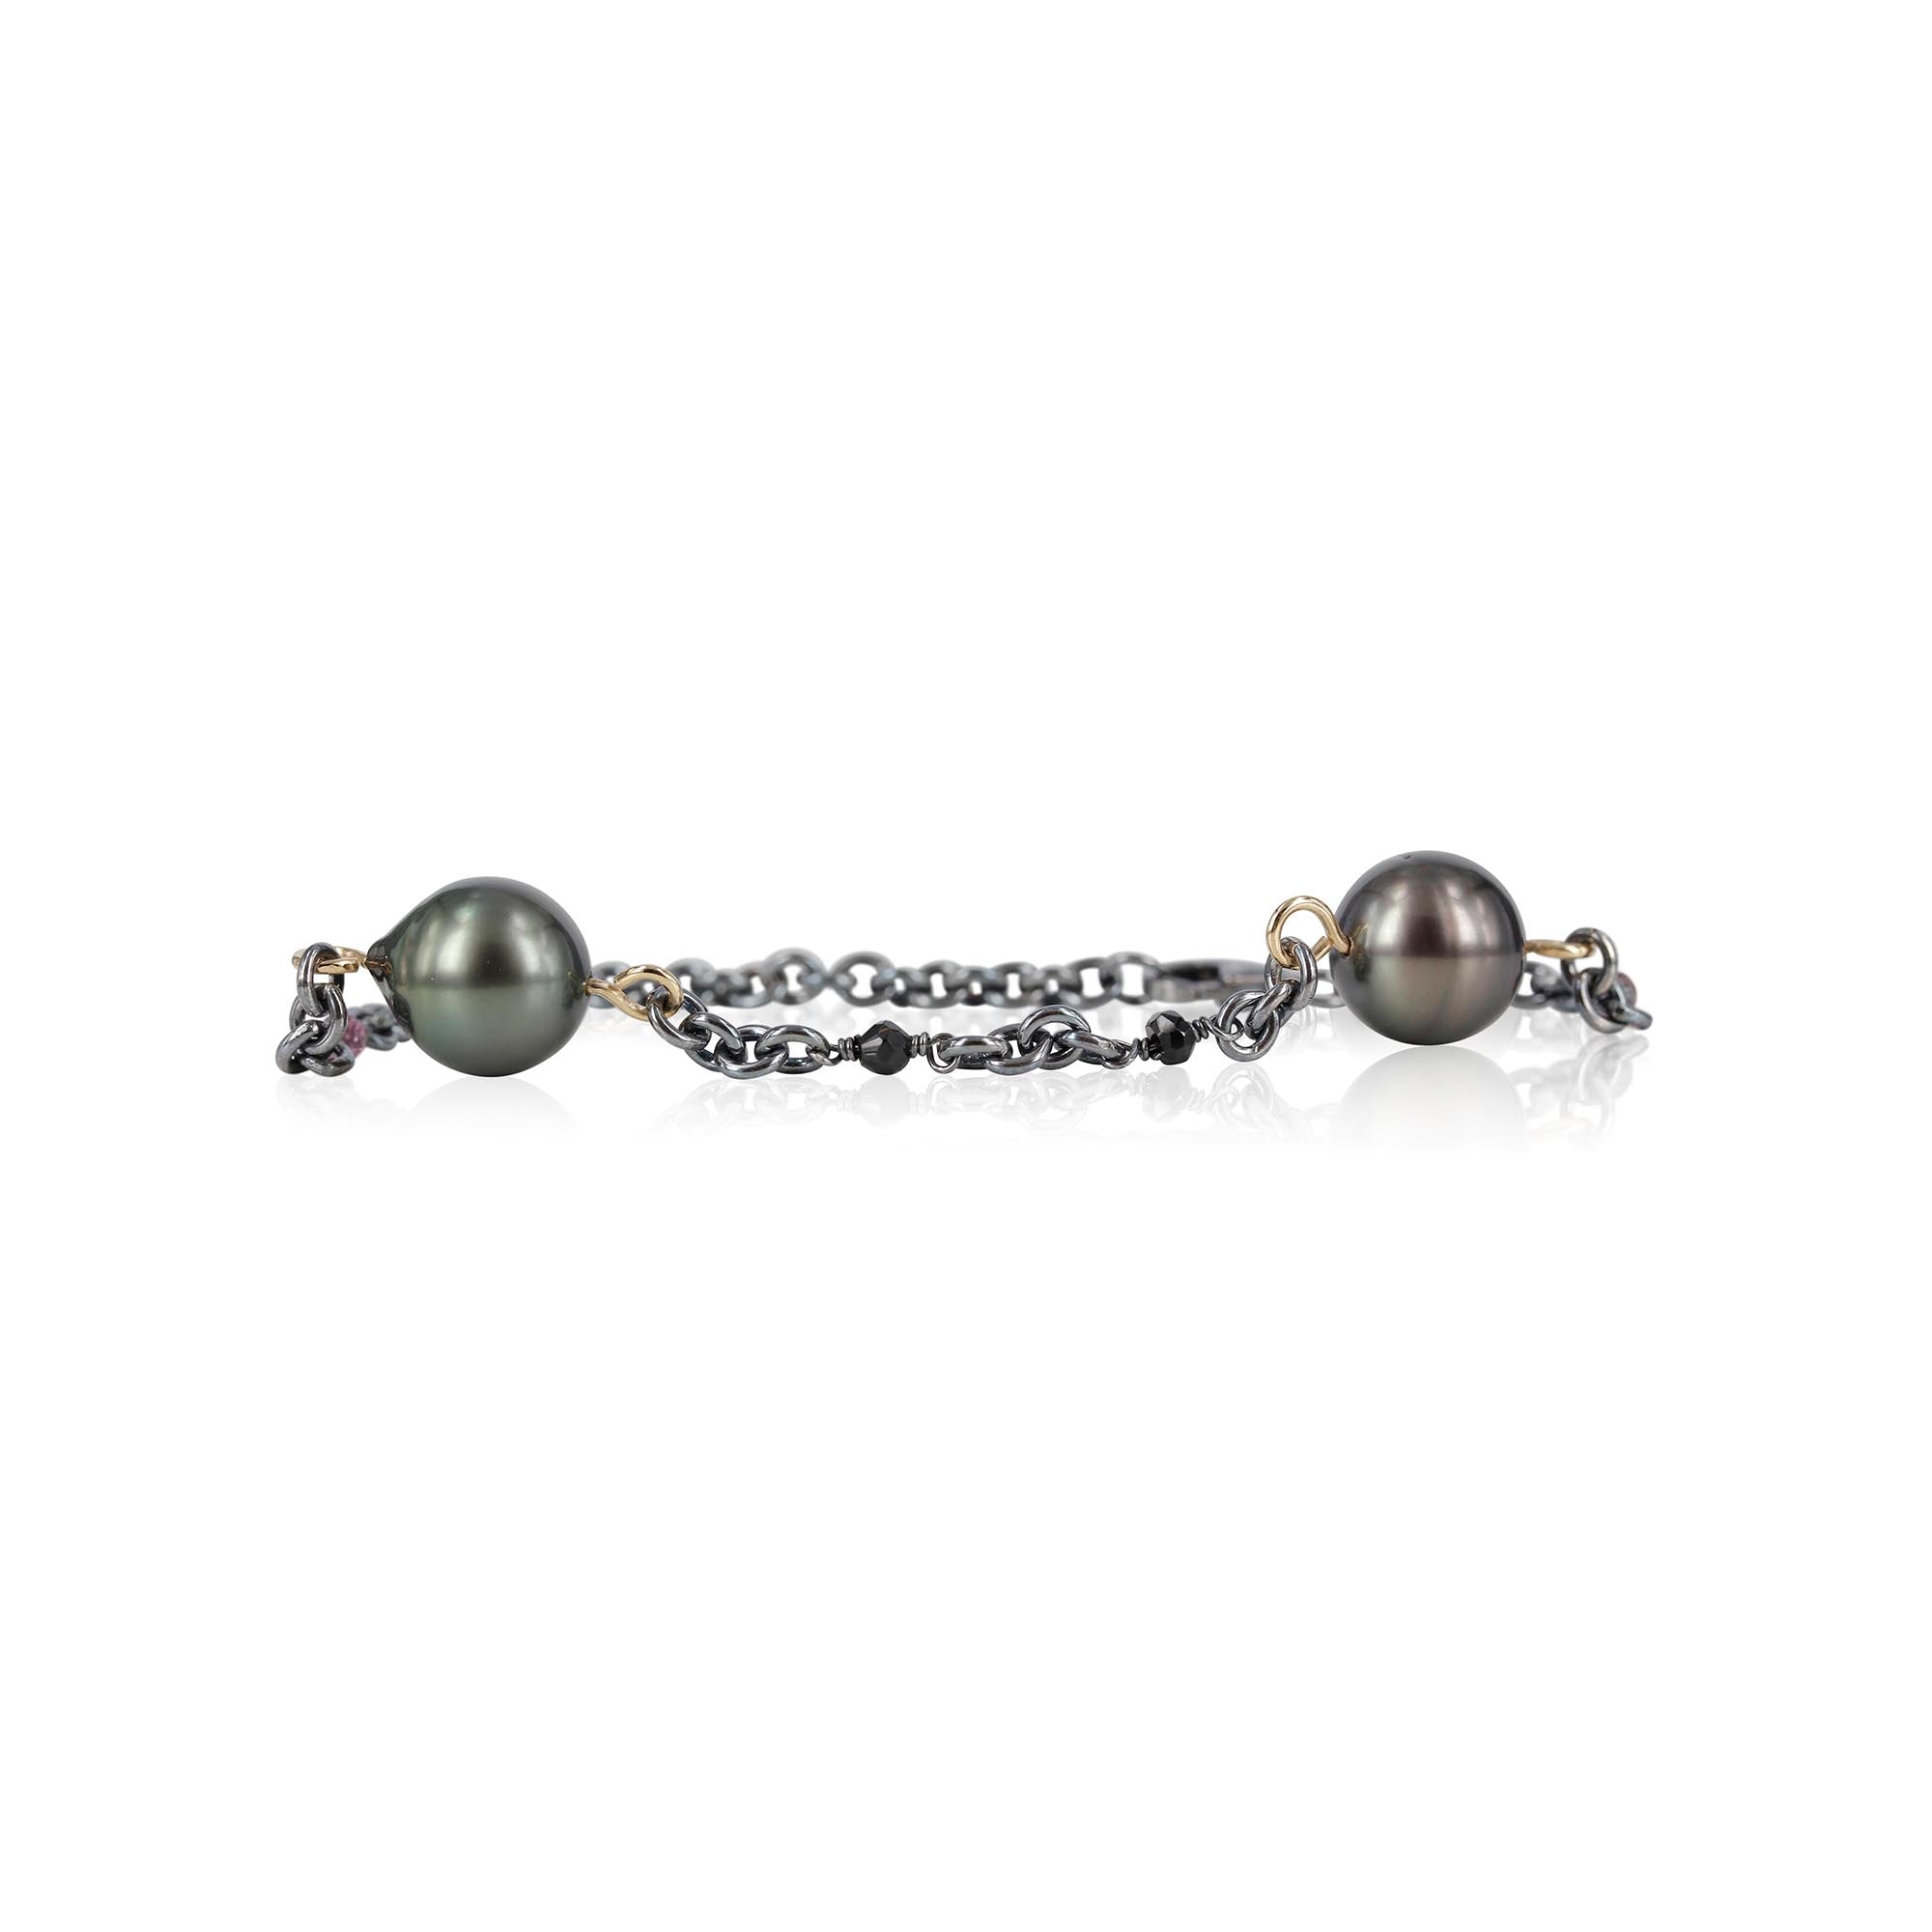 Unikt sølvarmbånd med smukke tahiti perler, samt smukke lilla turmalin og facetteret spinel.